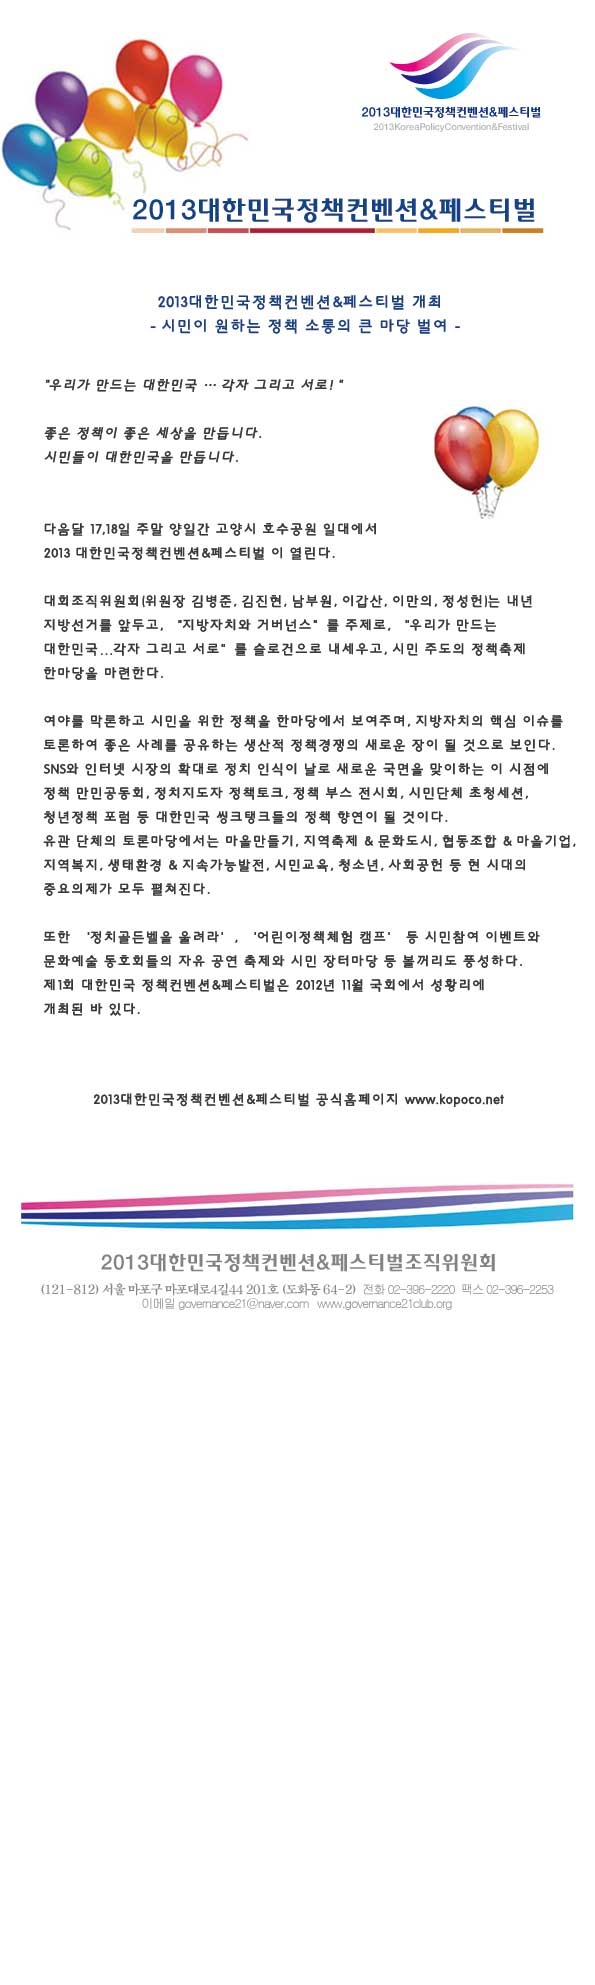 2013대한민국정책컨벤션&페스티벌 개최 1